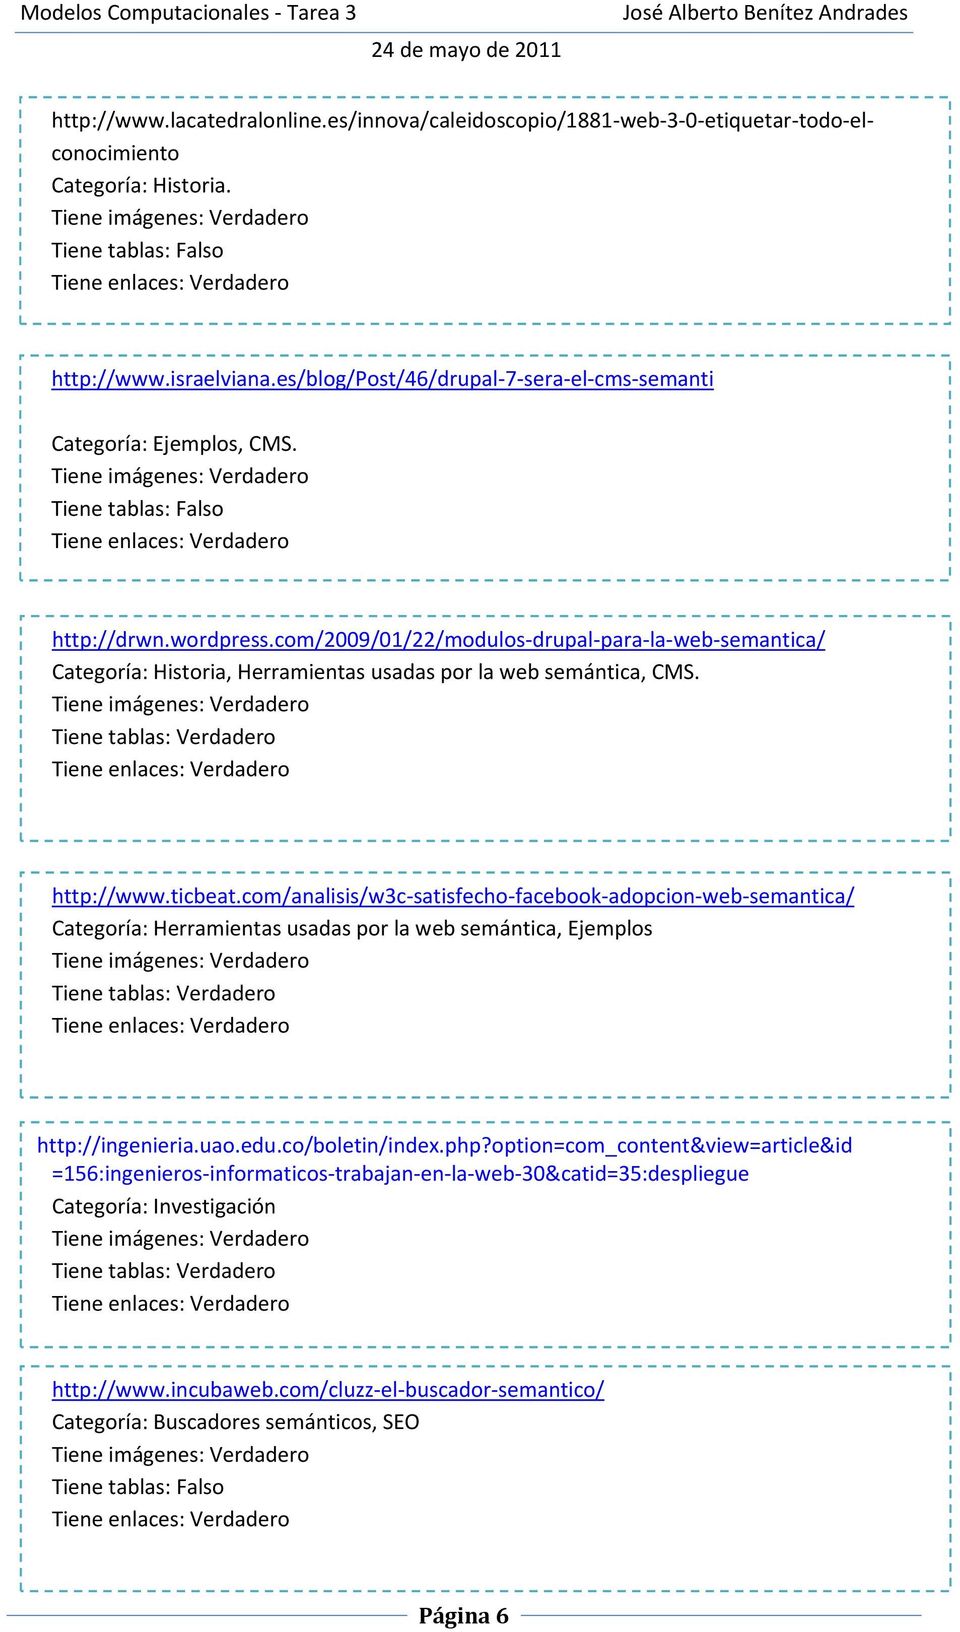 com/2009/01/22/modulos drupal para la web semantica/ Categoría: Historia, Herramientas usadas por la web semántica, CMS. Tiene tablas: Verdadero http://www.ticbeat.